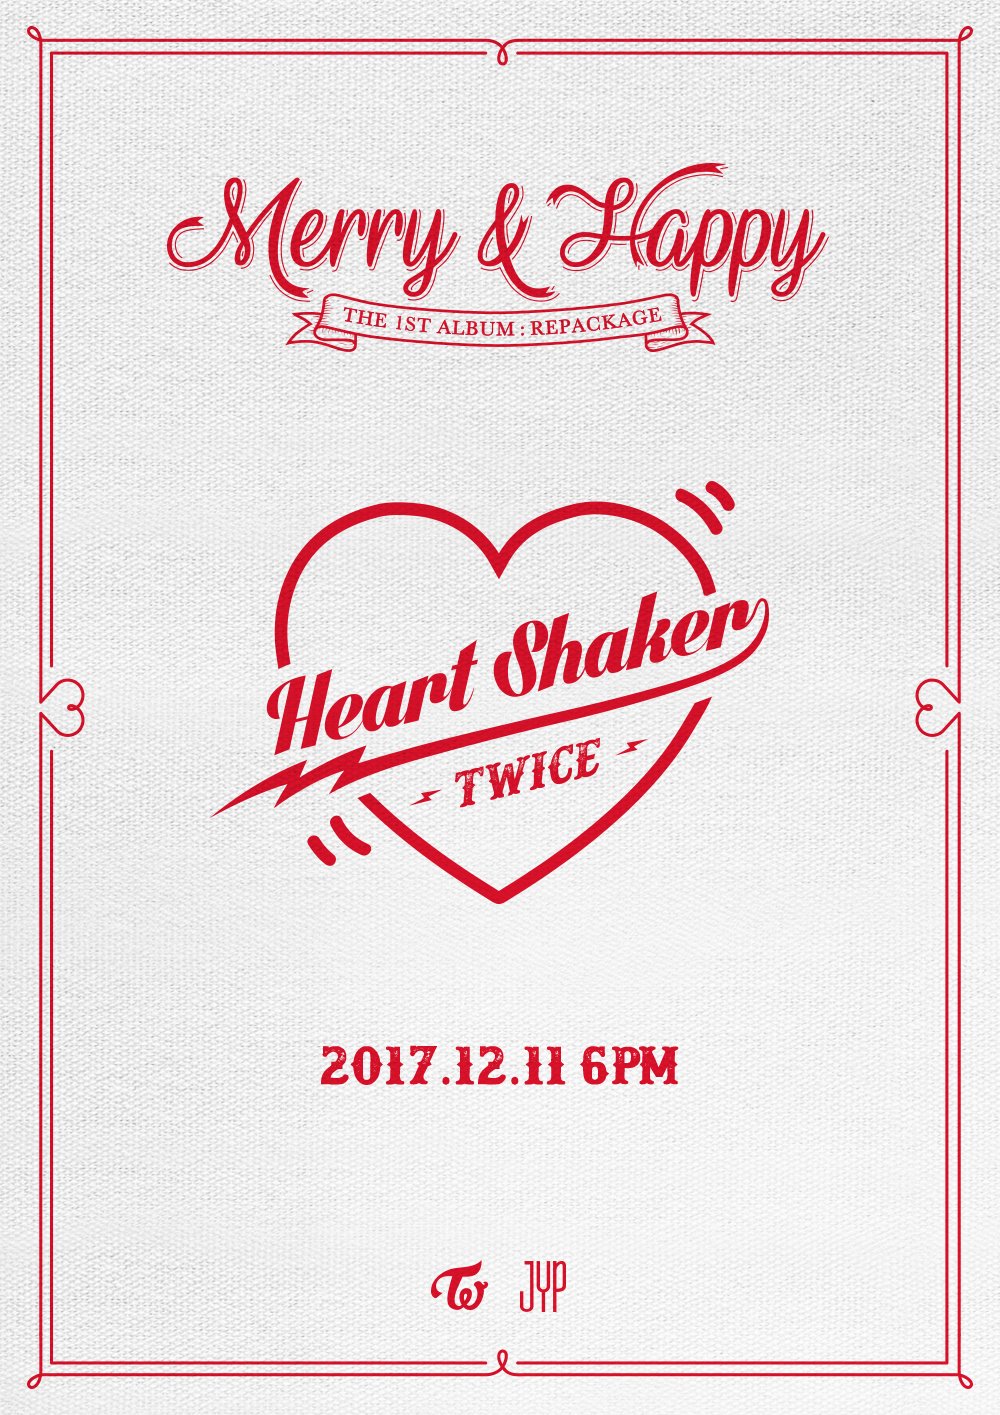 Twice Twice Heart Shaker 17 12 11 6pm Twice 트와이스 Heartshaker T Co Jxcqyp5ioj Twitter